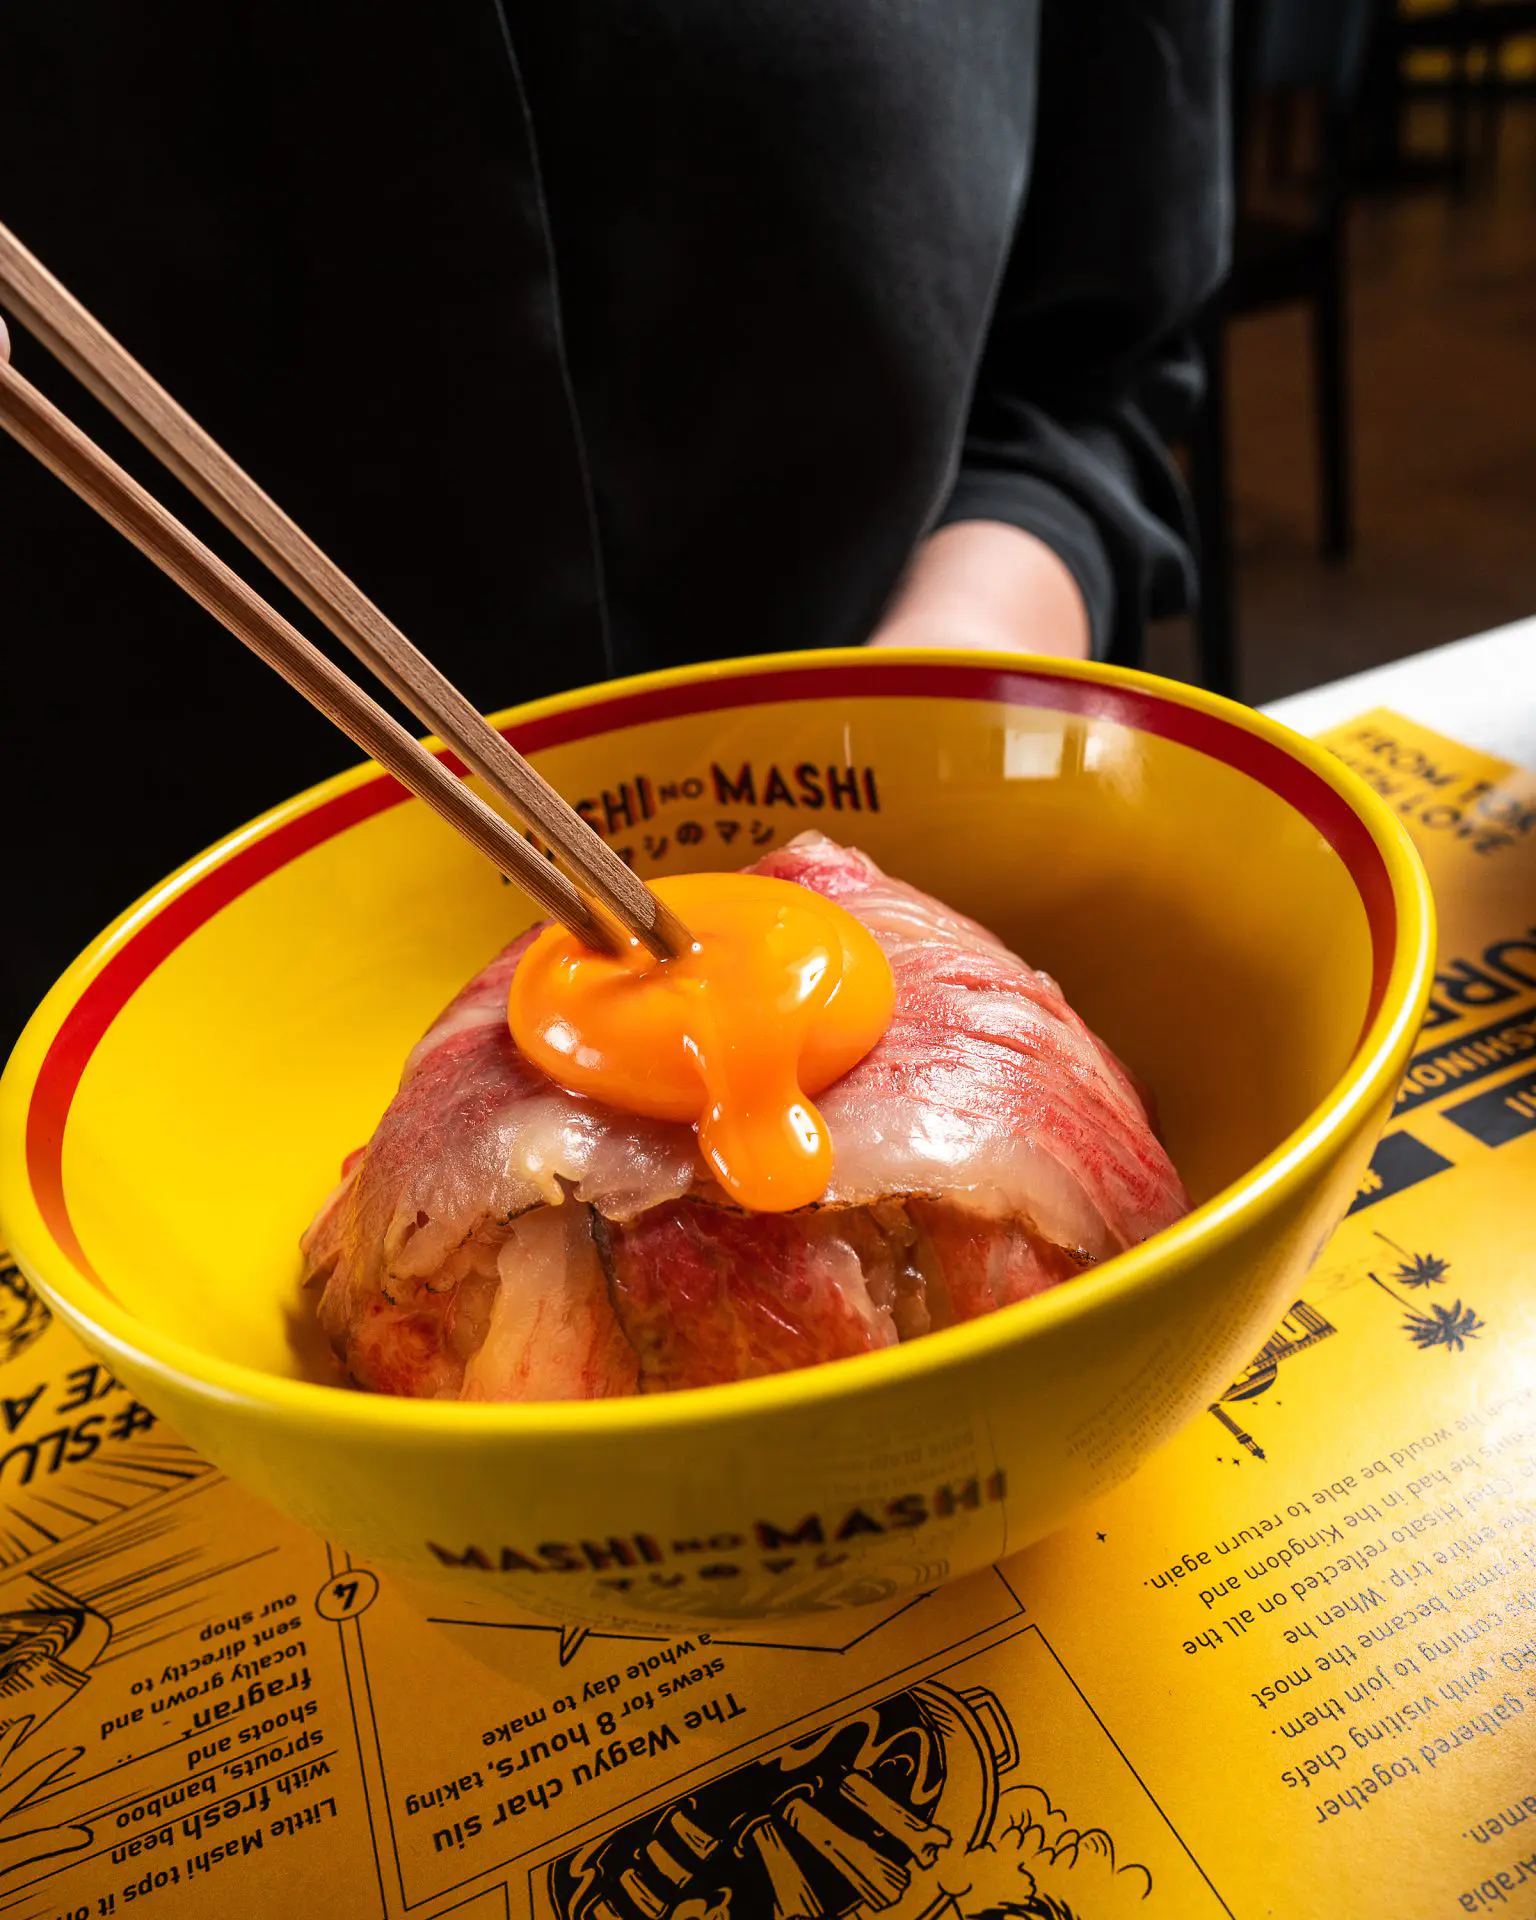 طبق واجيو دونبوري مقدم في مطعم ماشي نو ماشي الياباني - احدى المطاعم العالمية الفخمة في نادي جدة لليخوت